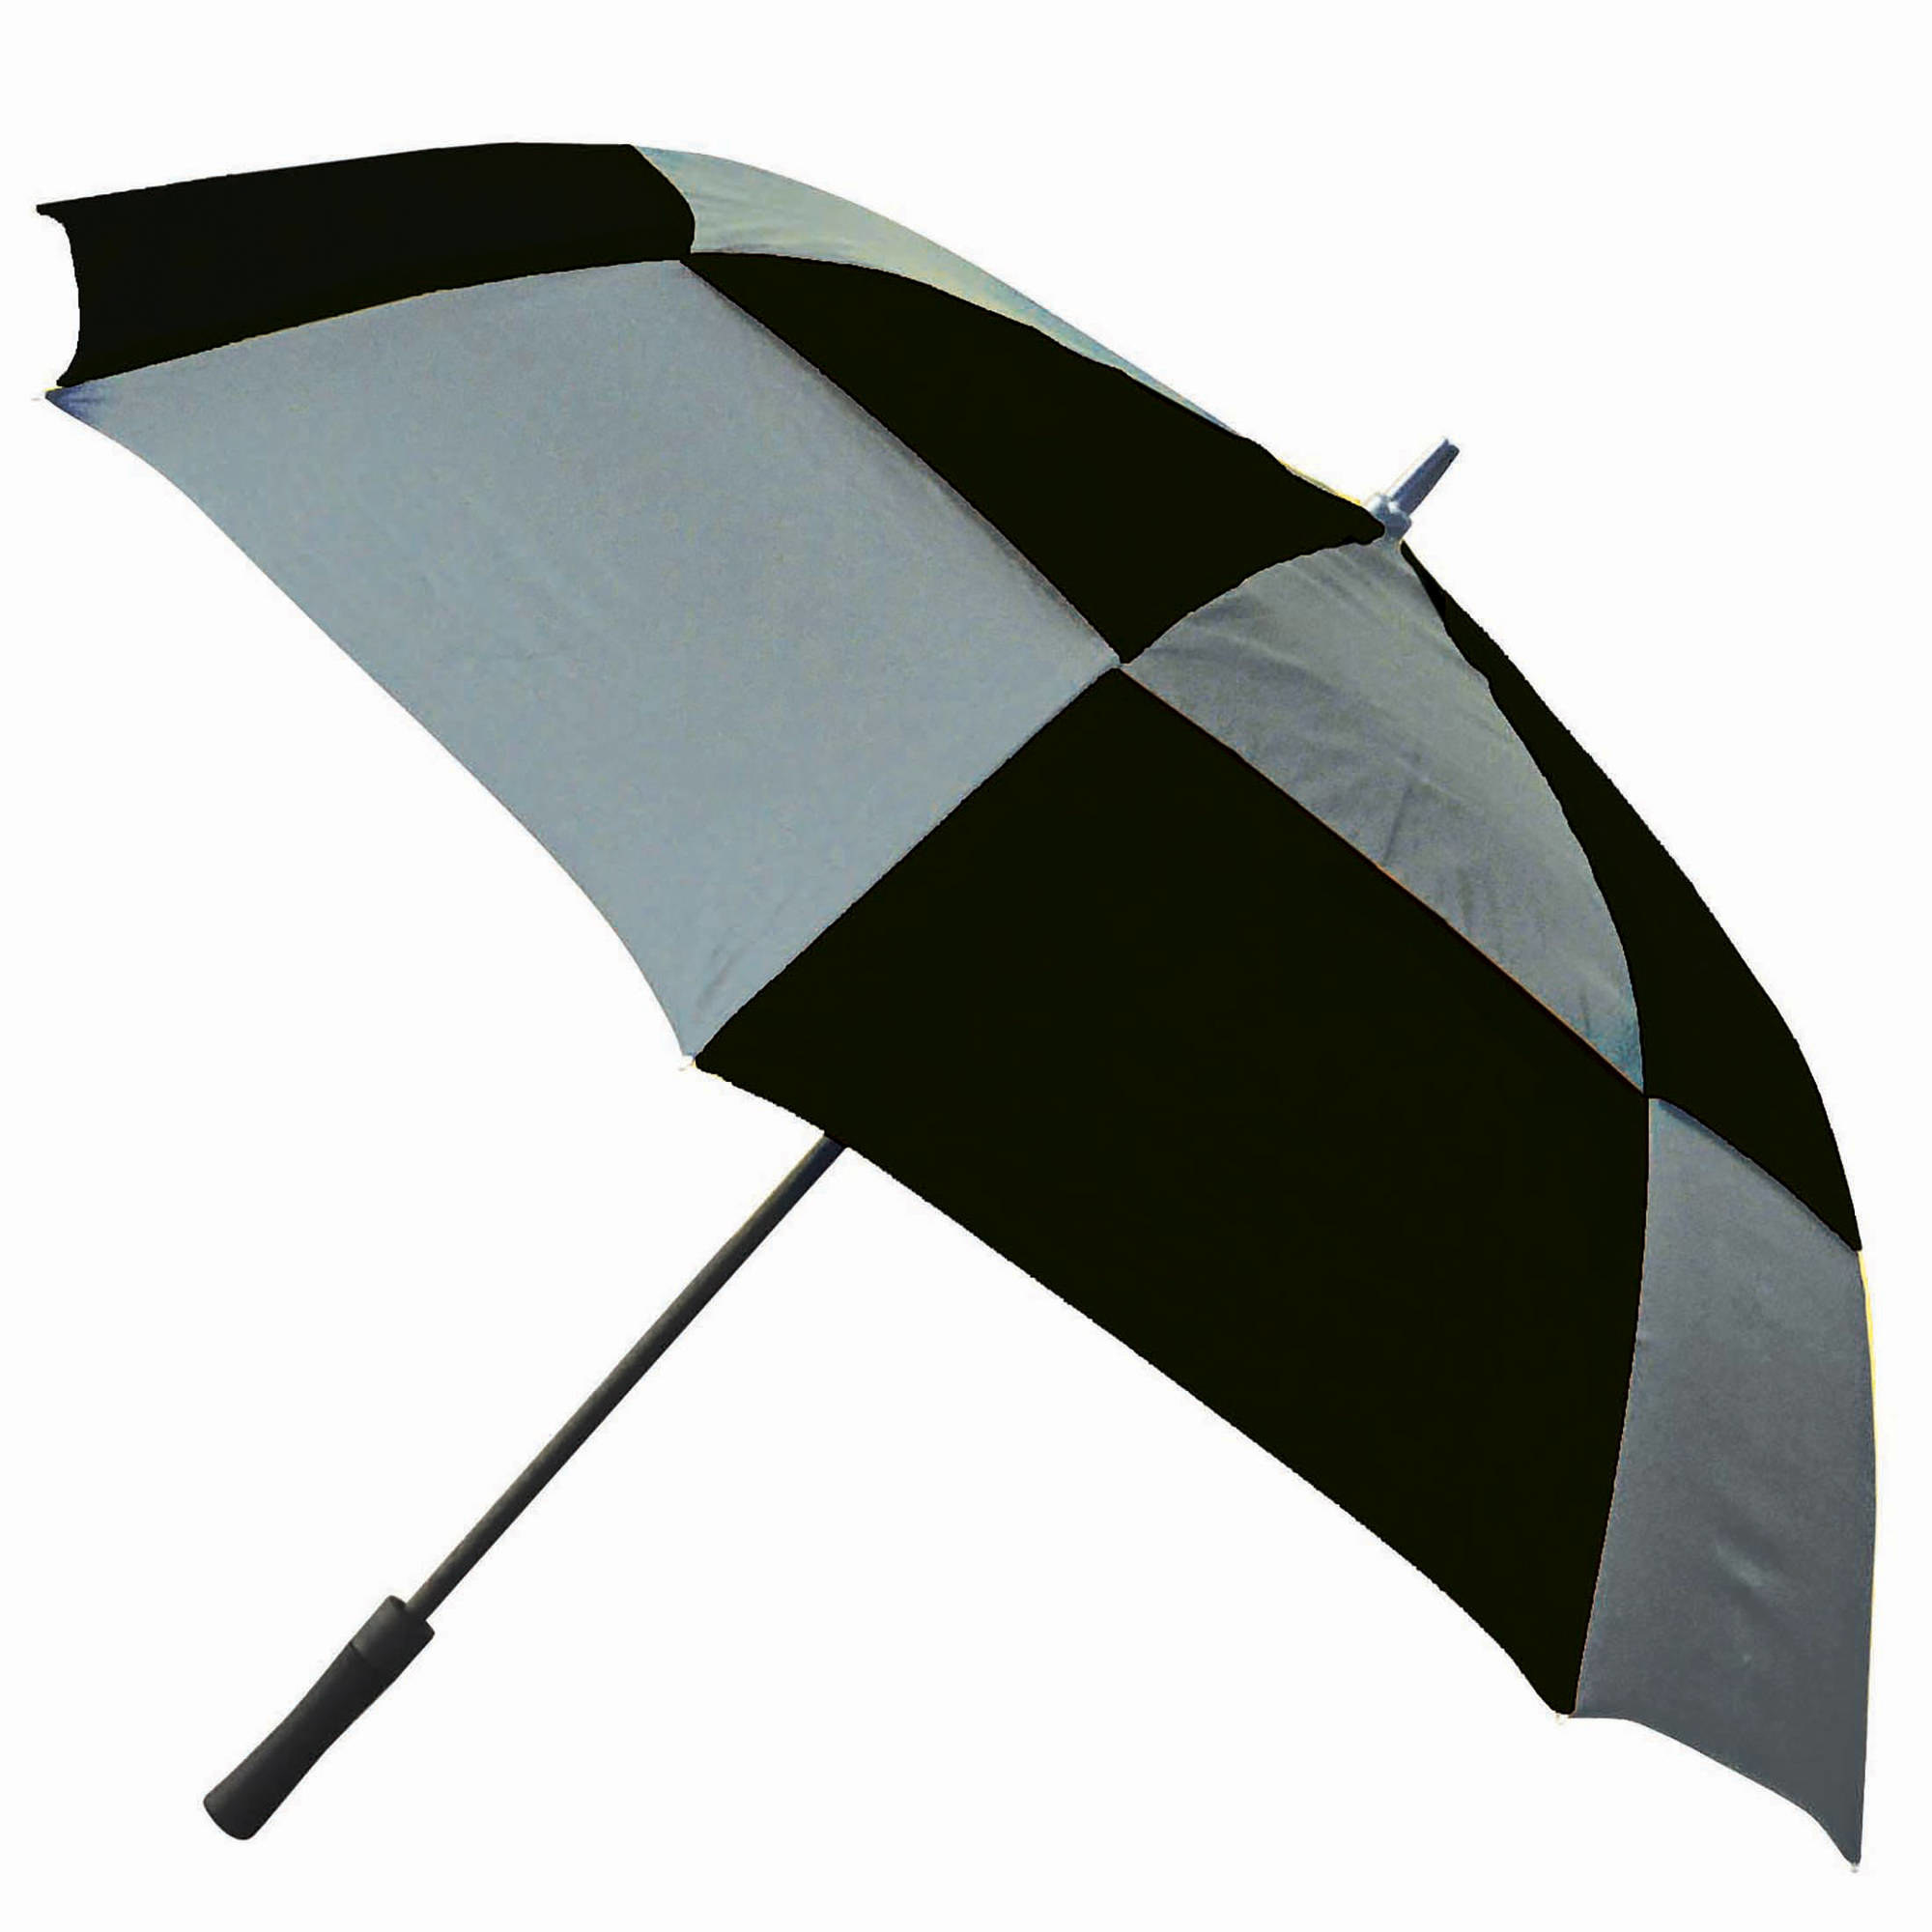 The gray umbrella